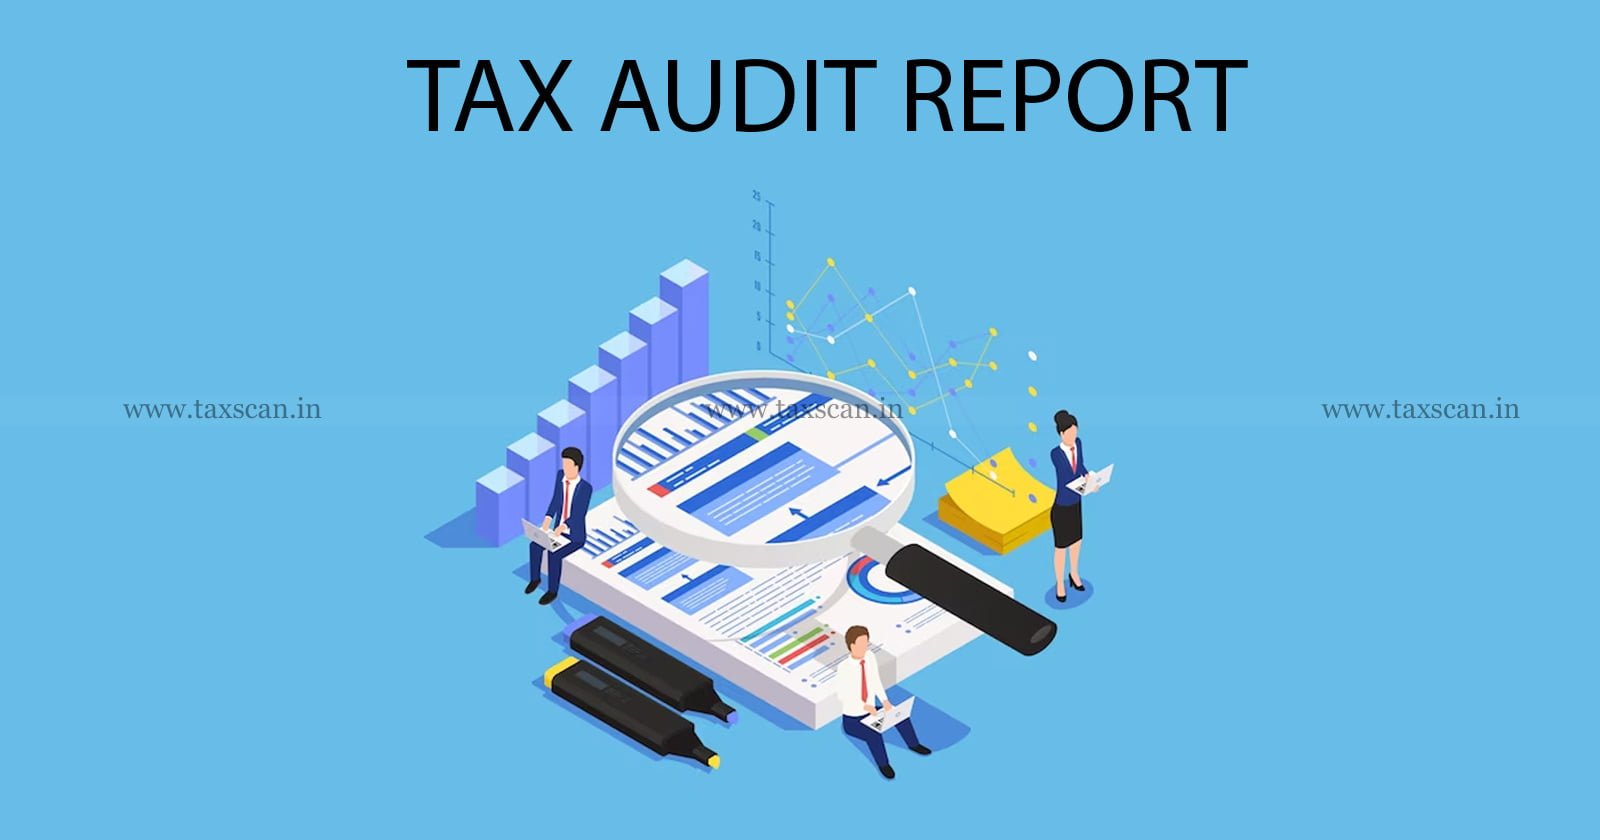 Tax Audit Report - Tax Audit - Audit Report - Technical Breach - Law - ITAT - Penalty - Taxscan